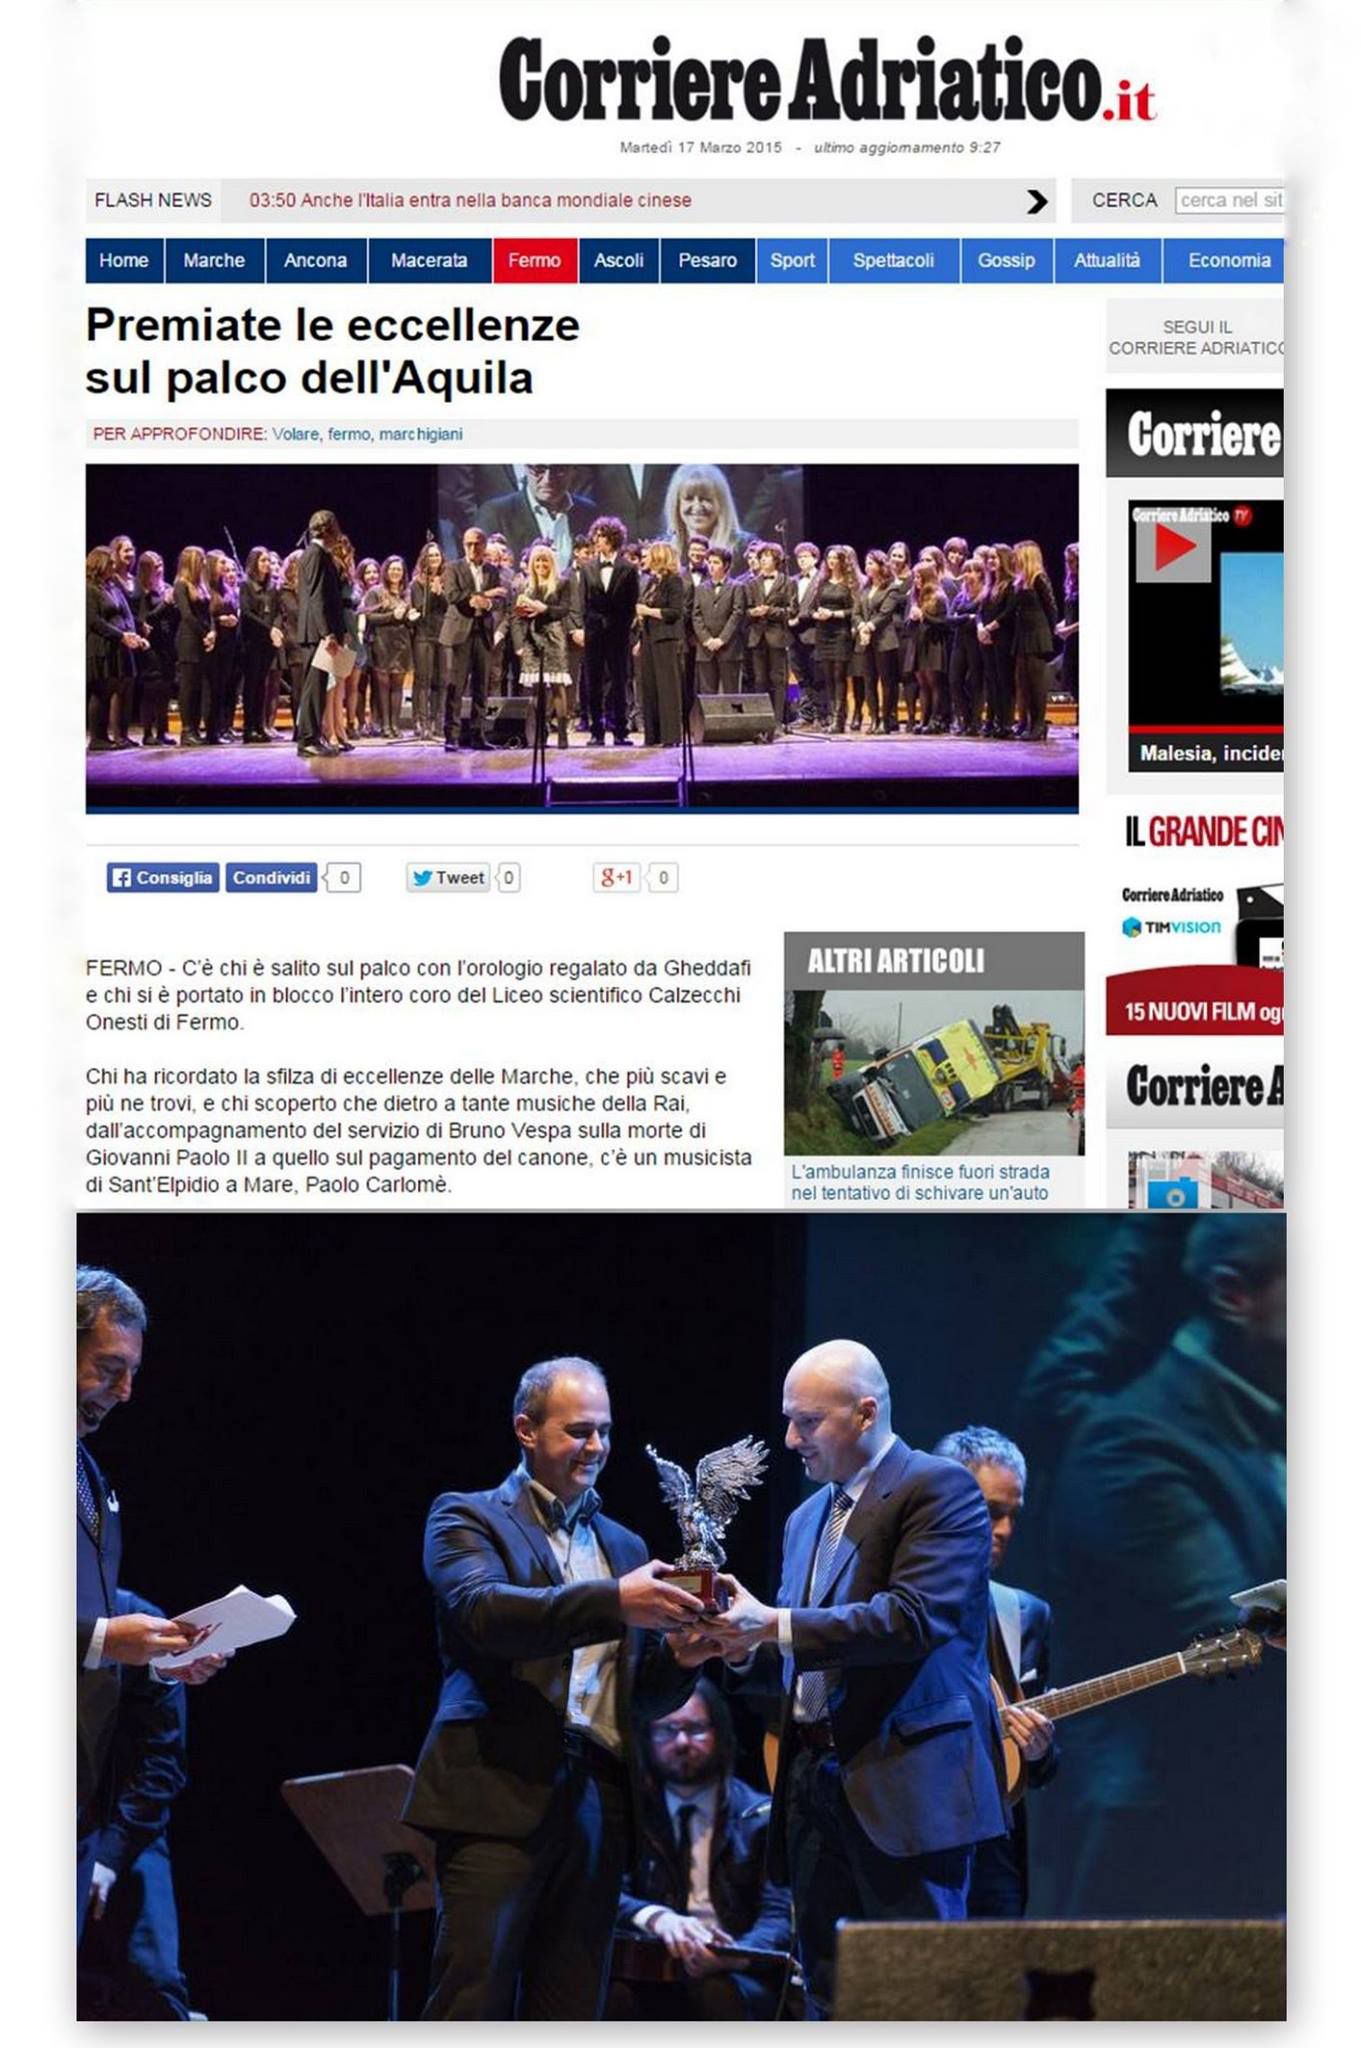 Volare - premio marchigiani d'autore con il giornalista RAI Attilio Romita Teatro dell'Aquila - Fermo Italy 15-03-2015